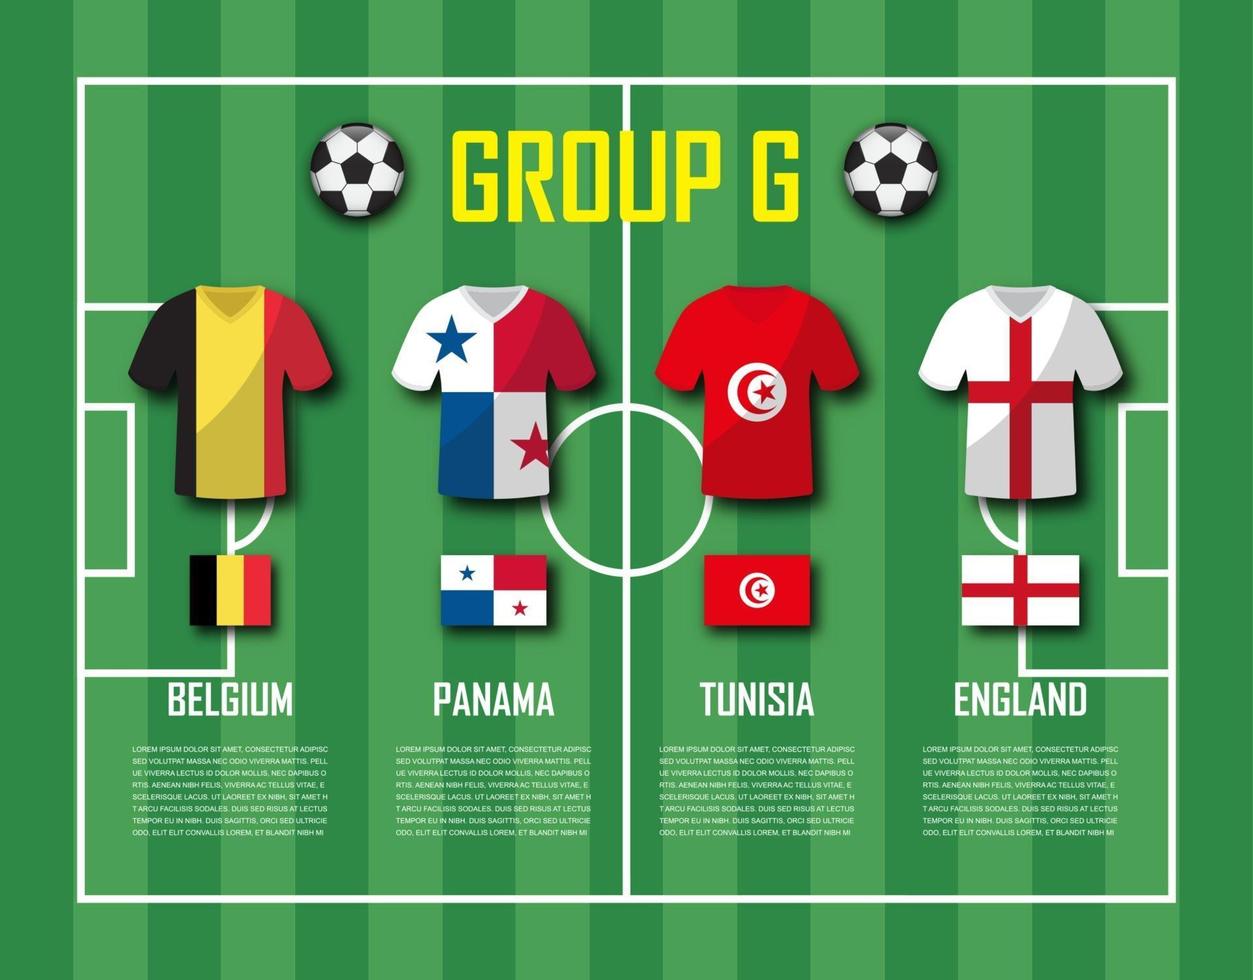 coupe de football 2018 équipe groupe g joueurs de football avec uniforme de maillot et drapeaux nationaux vecteur pour le tournoi de championnat du monde international